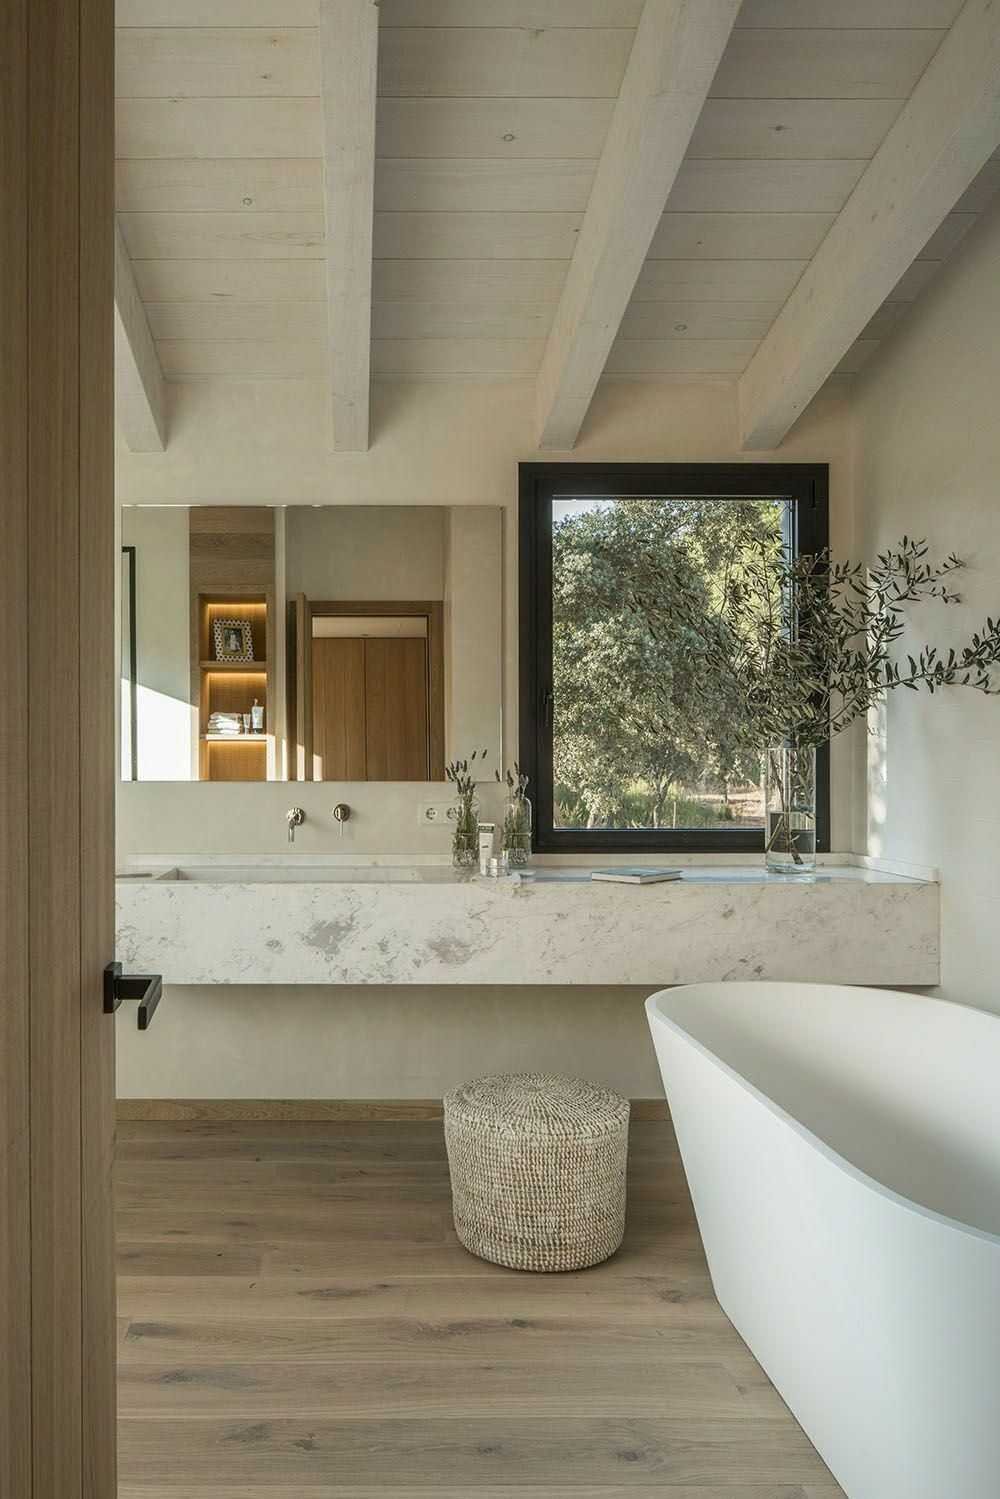 Làm trần gỗ cũng là một cách tăng độ tự nhiên cho không gian phòng tắm, nếu giữ được phòng tắm luôn khô ráo thì đây là một cách làm hiệu quả